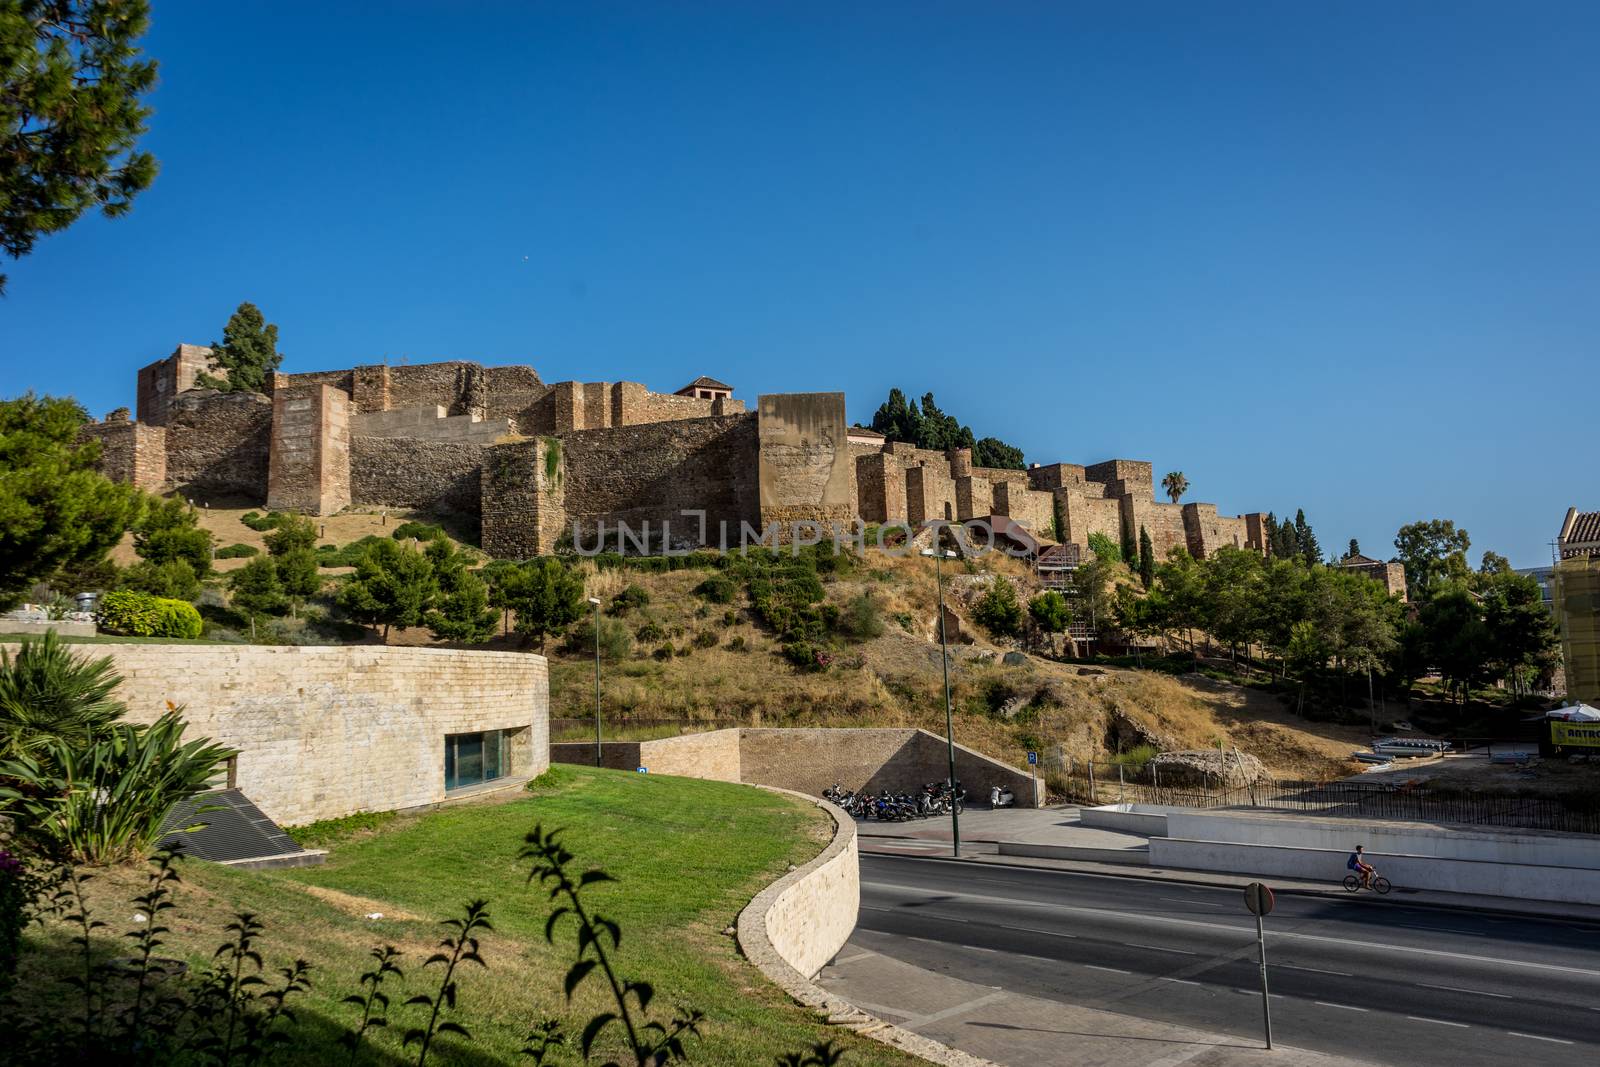 Gibralfaro castle (Alcazaba de Malaga), Malaga, Costa del Sol, S by ramana16